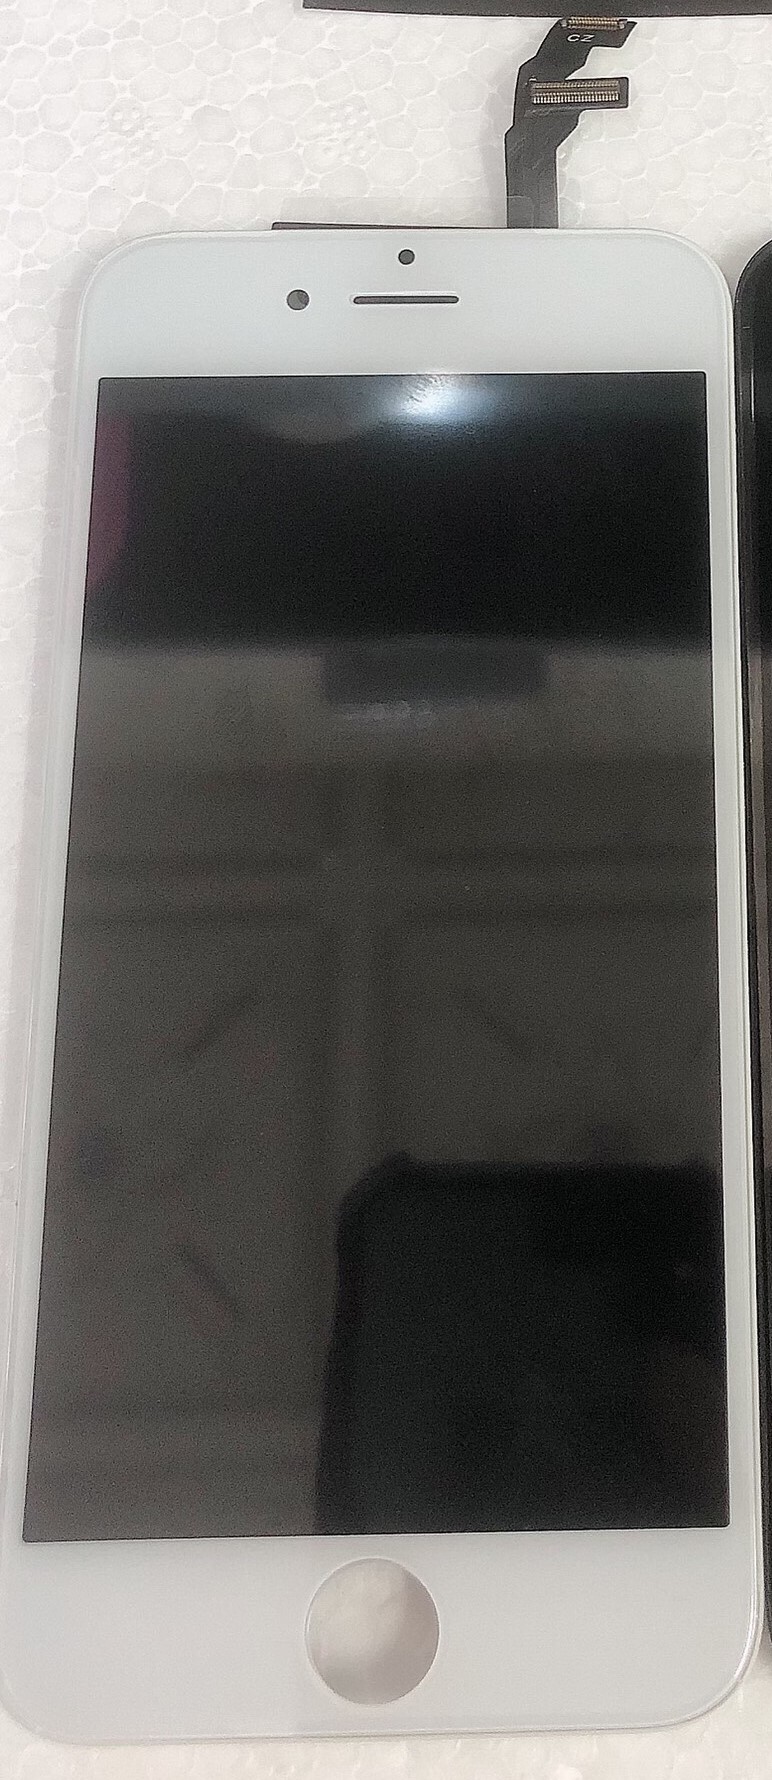 Màn hình iphone 6G zin bóc máy đen trắng